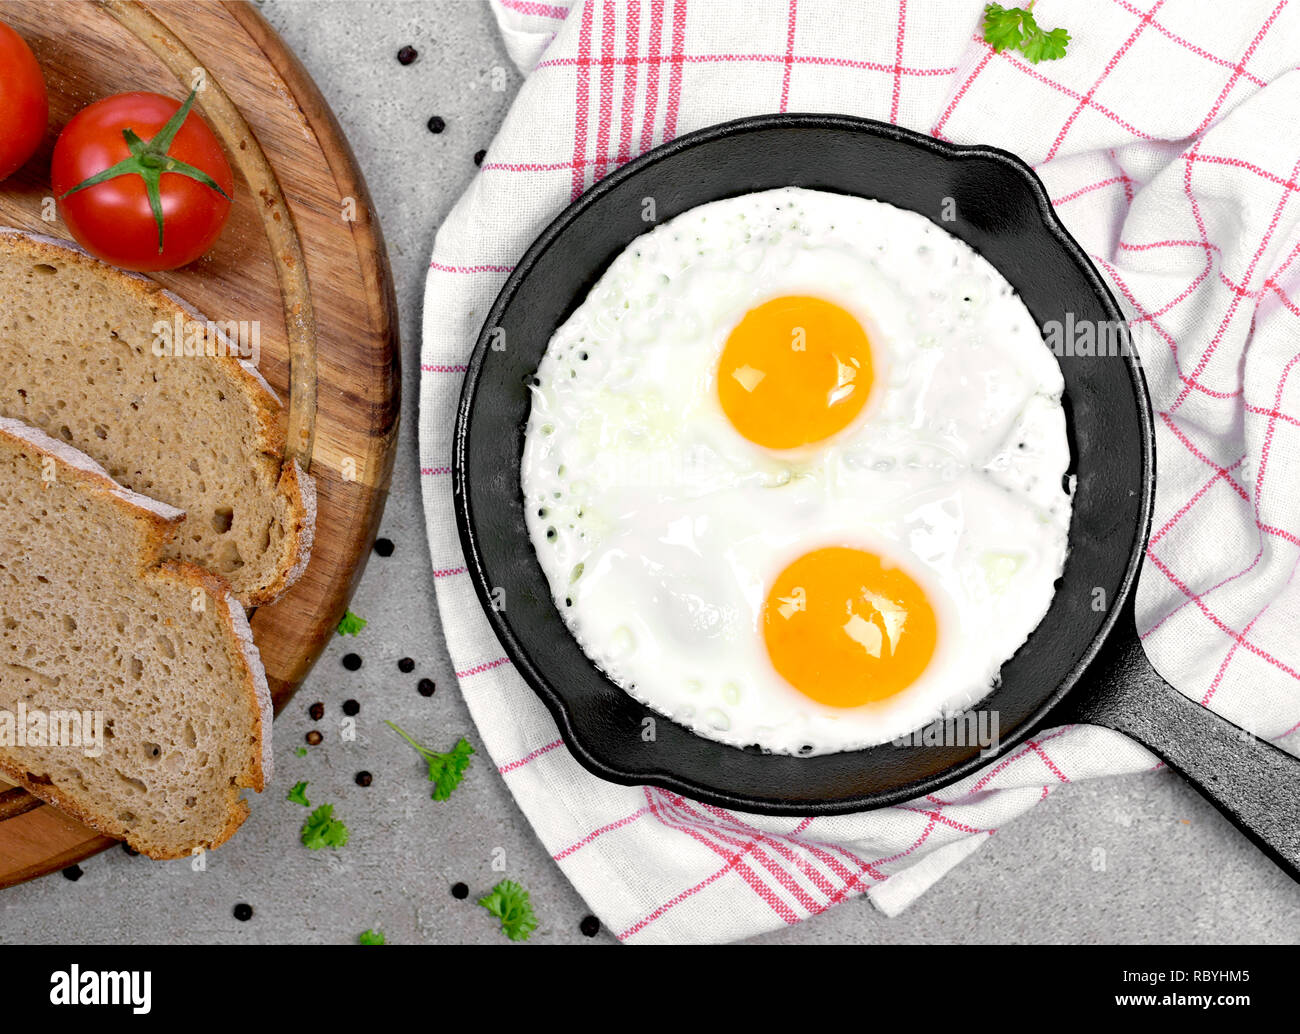 Lecker Spiegelei in einer gusseisernen Pfanne. Blick von oben auf die Eier und Brot, Frühstück Szene. Stockfoto